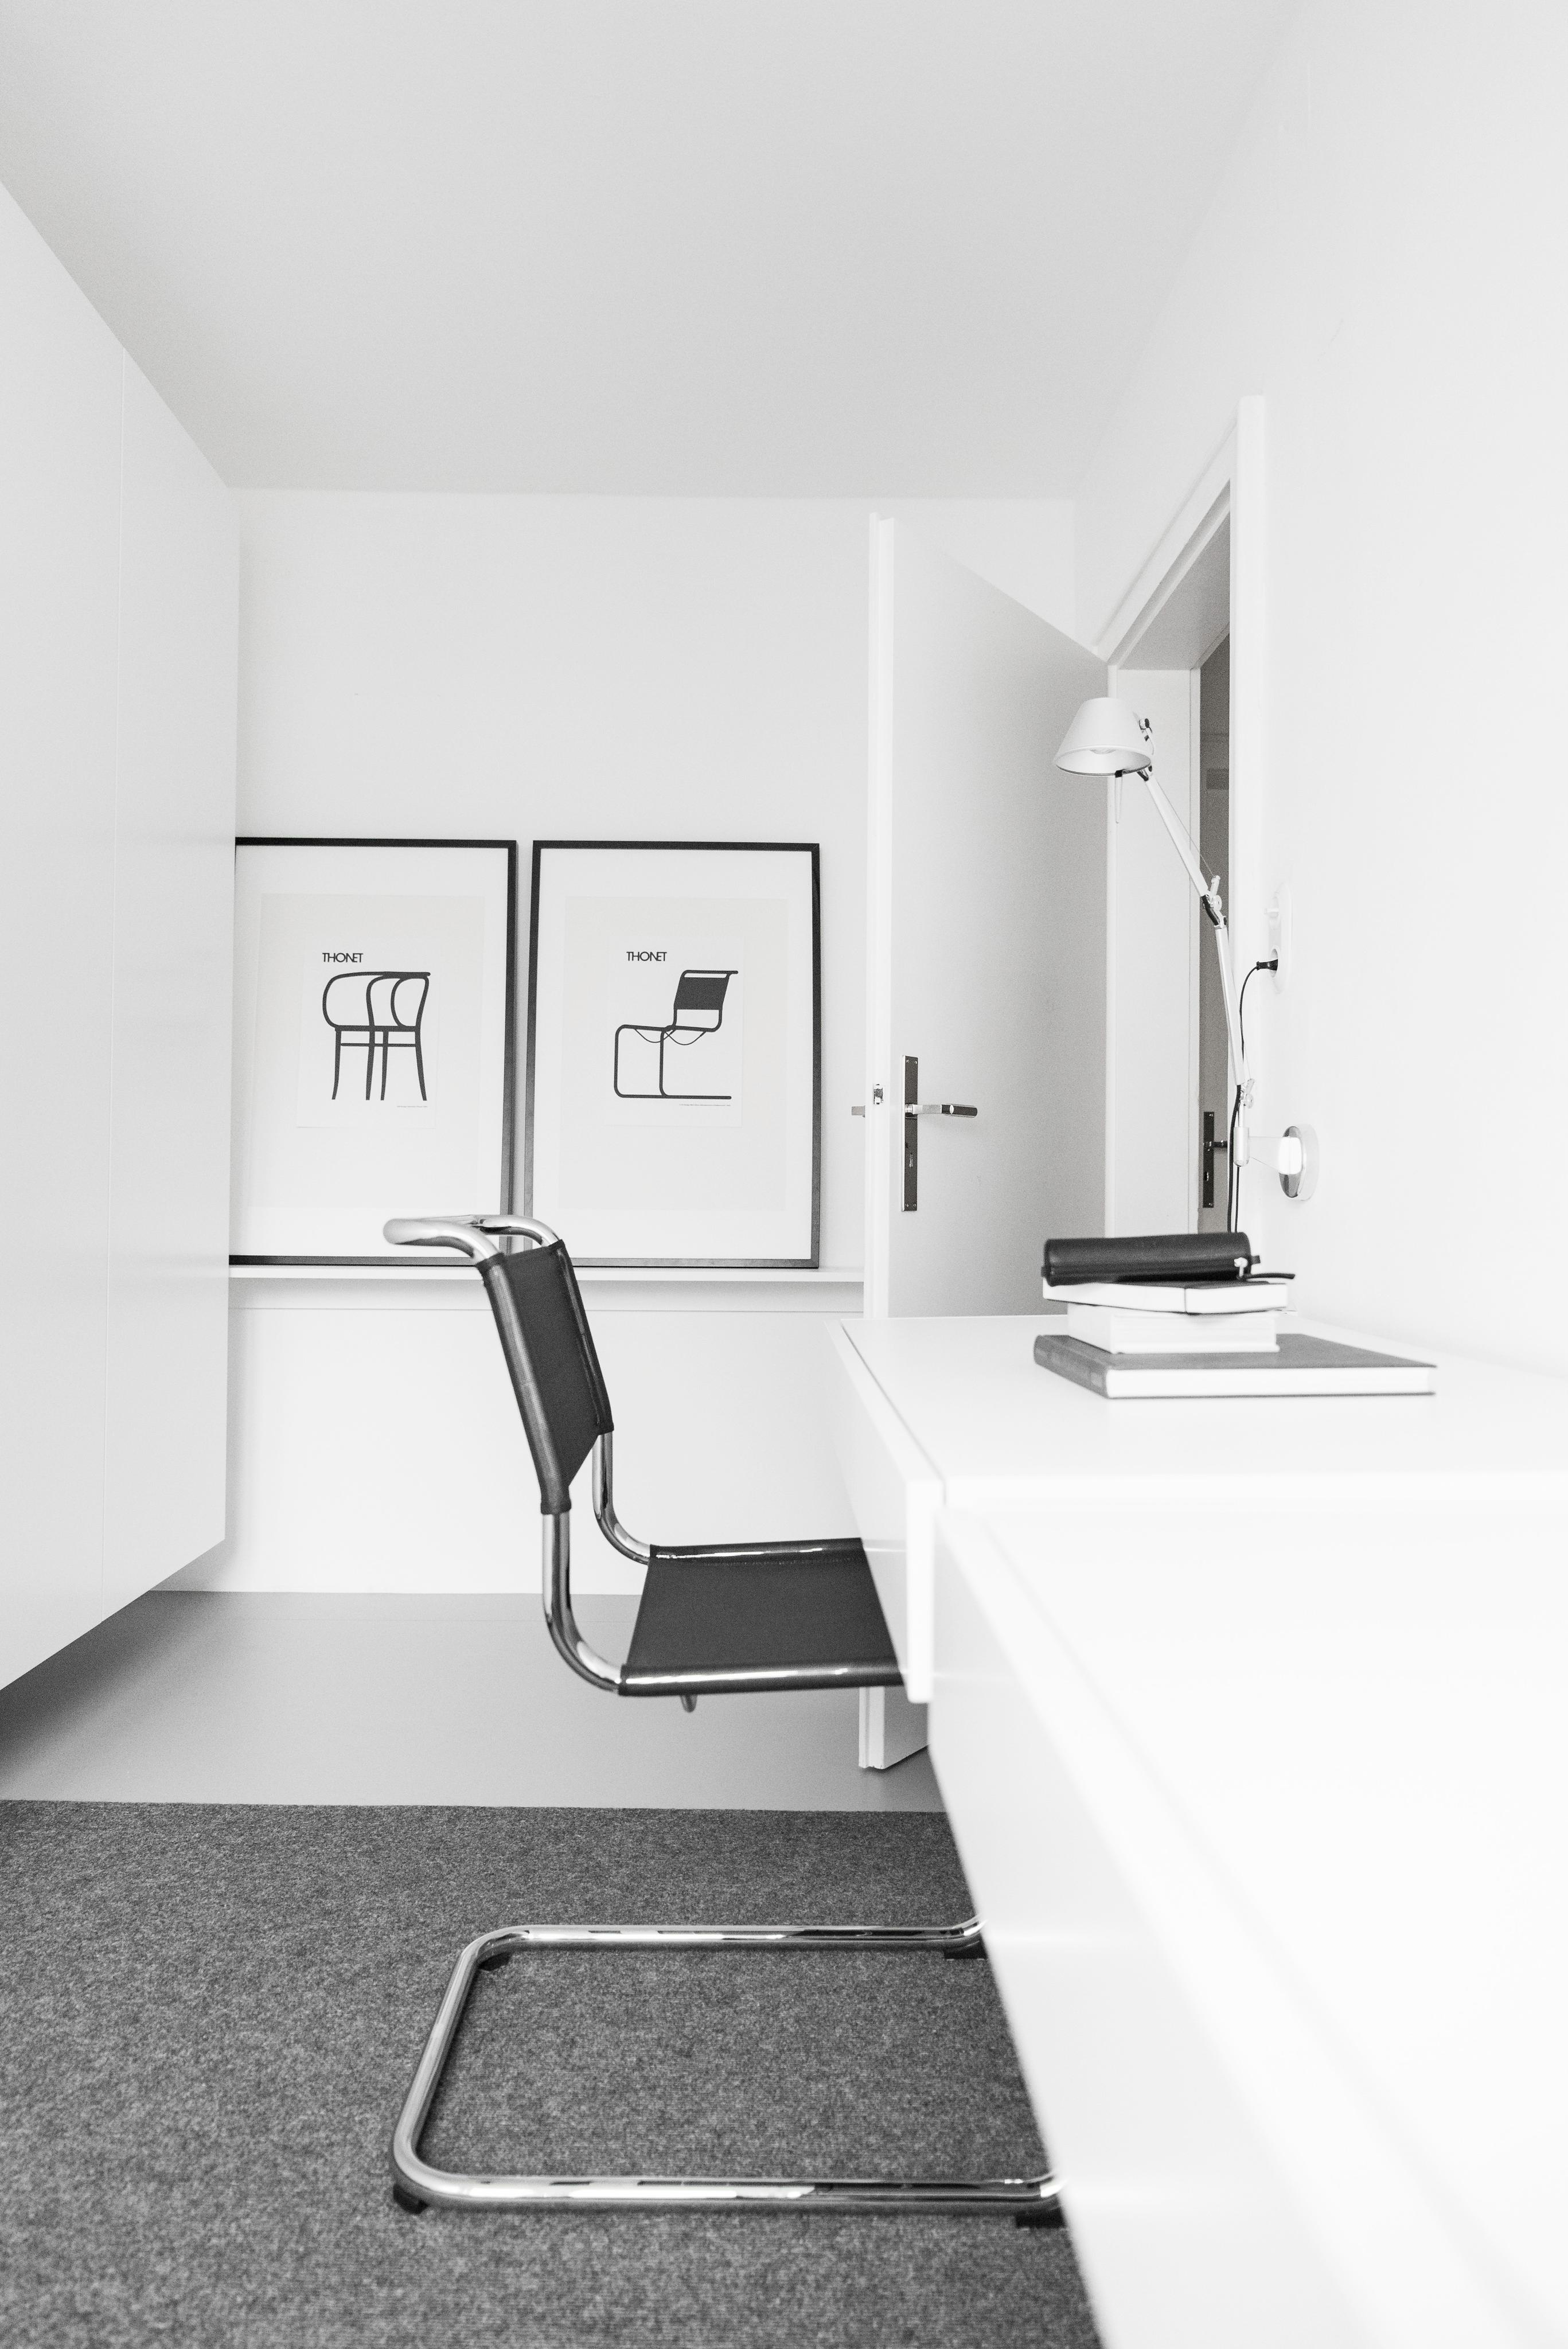 Schwebende Schreibtische im Büro - mein Arbeitsbereich!
#büro #homeoffice #arbeitszimmer #design #bauhaus #minimalismus